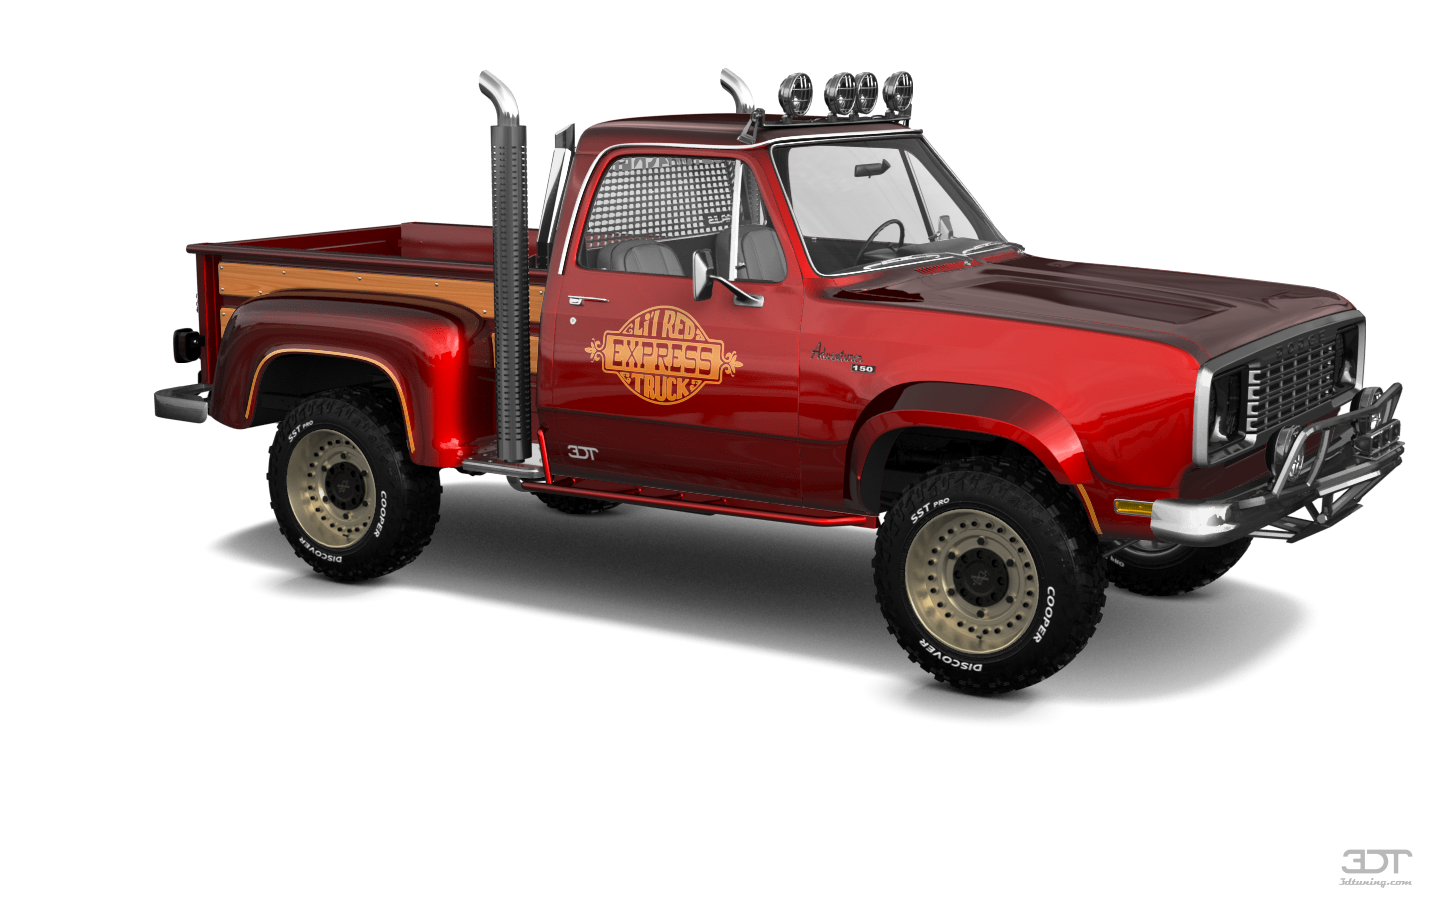 Dodge Lil Red Express 2 Door pickup truck 1978